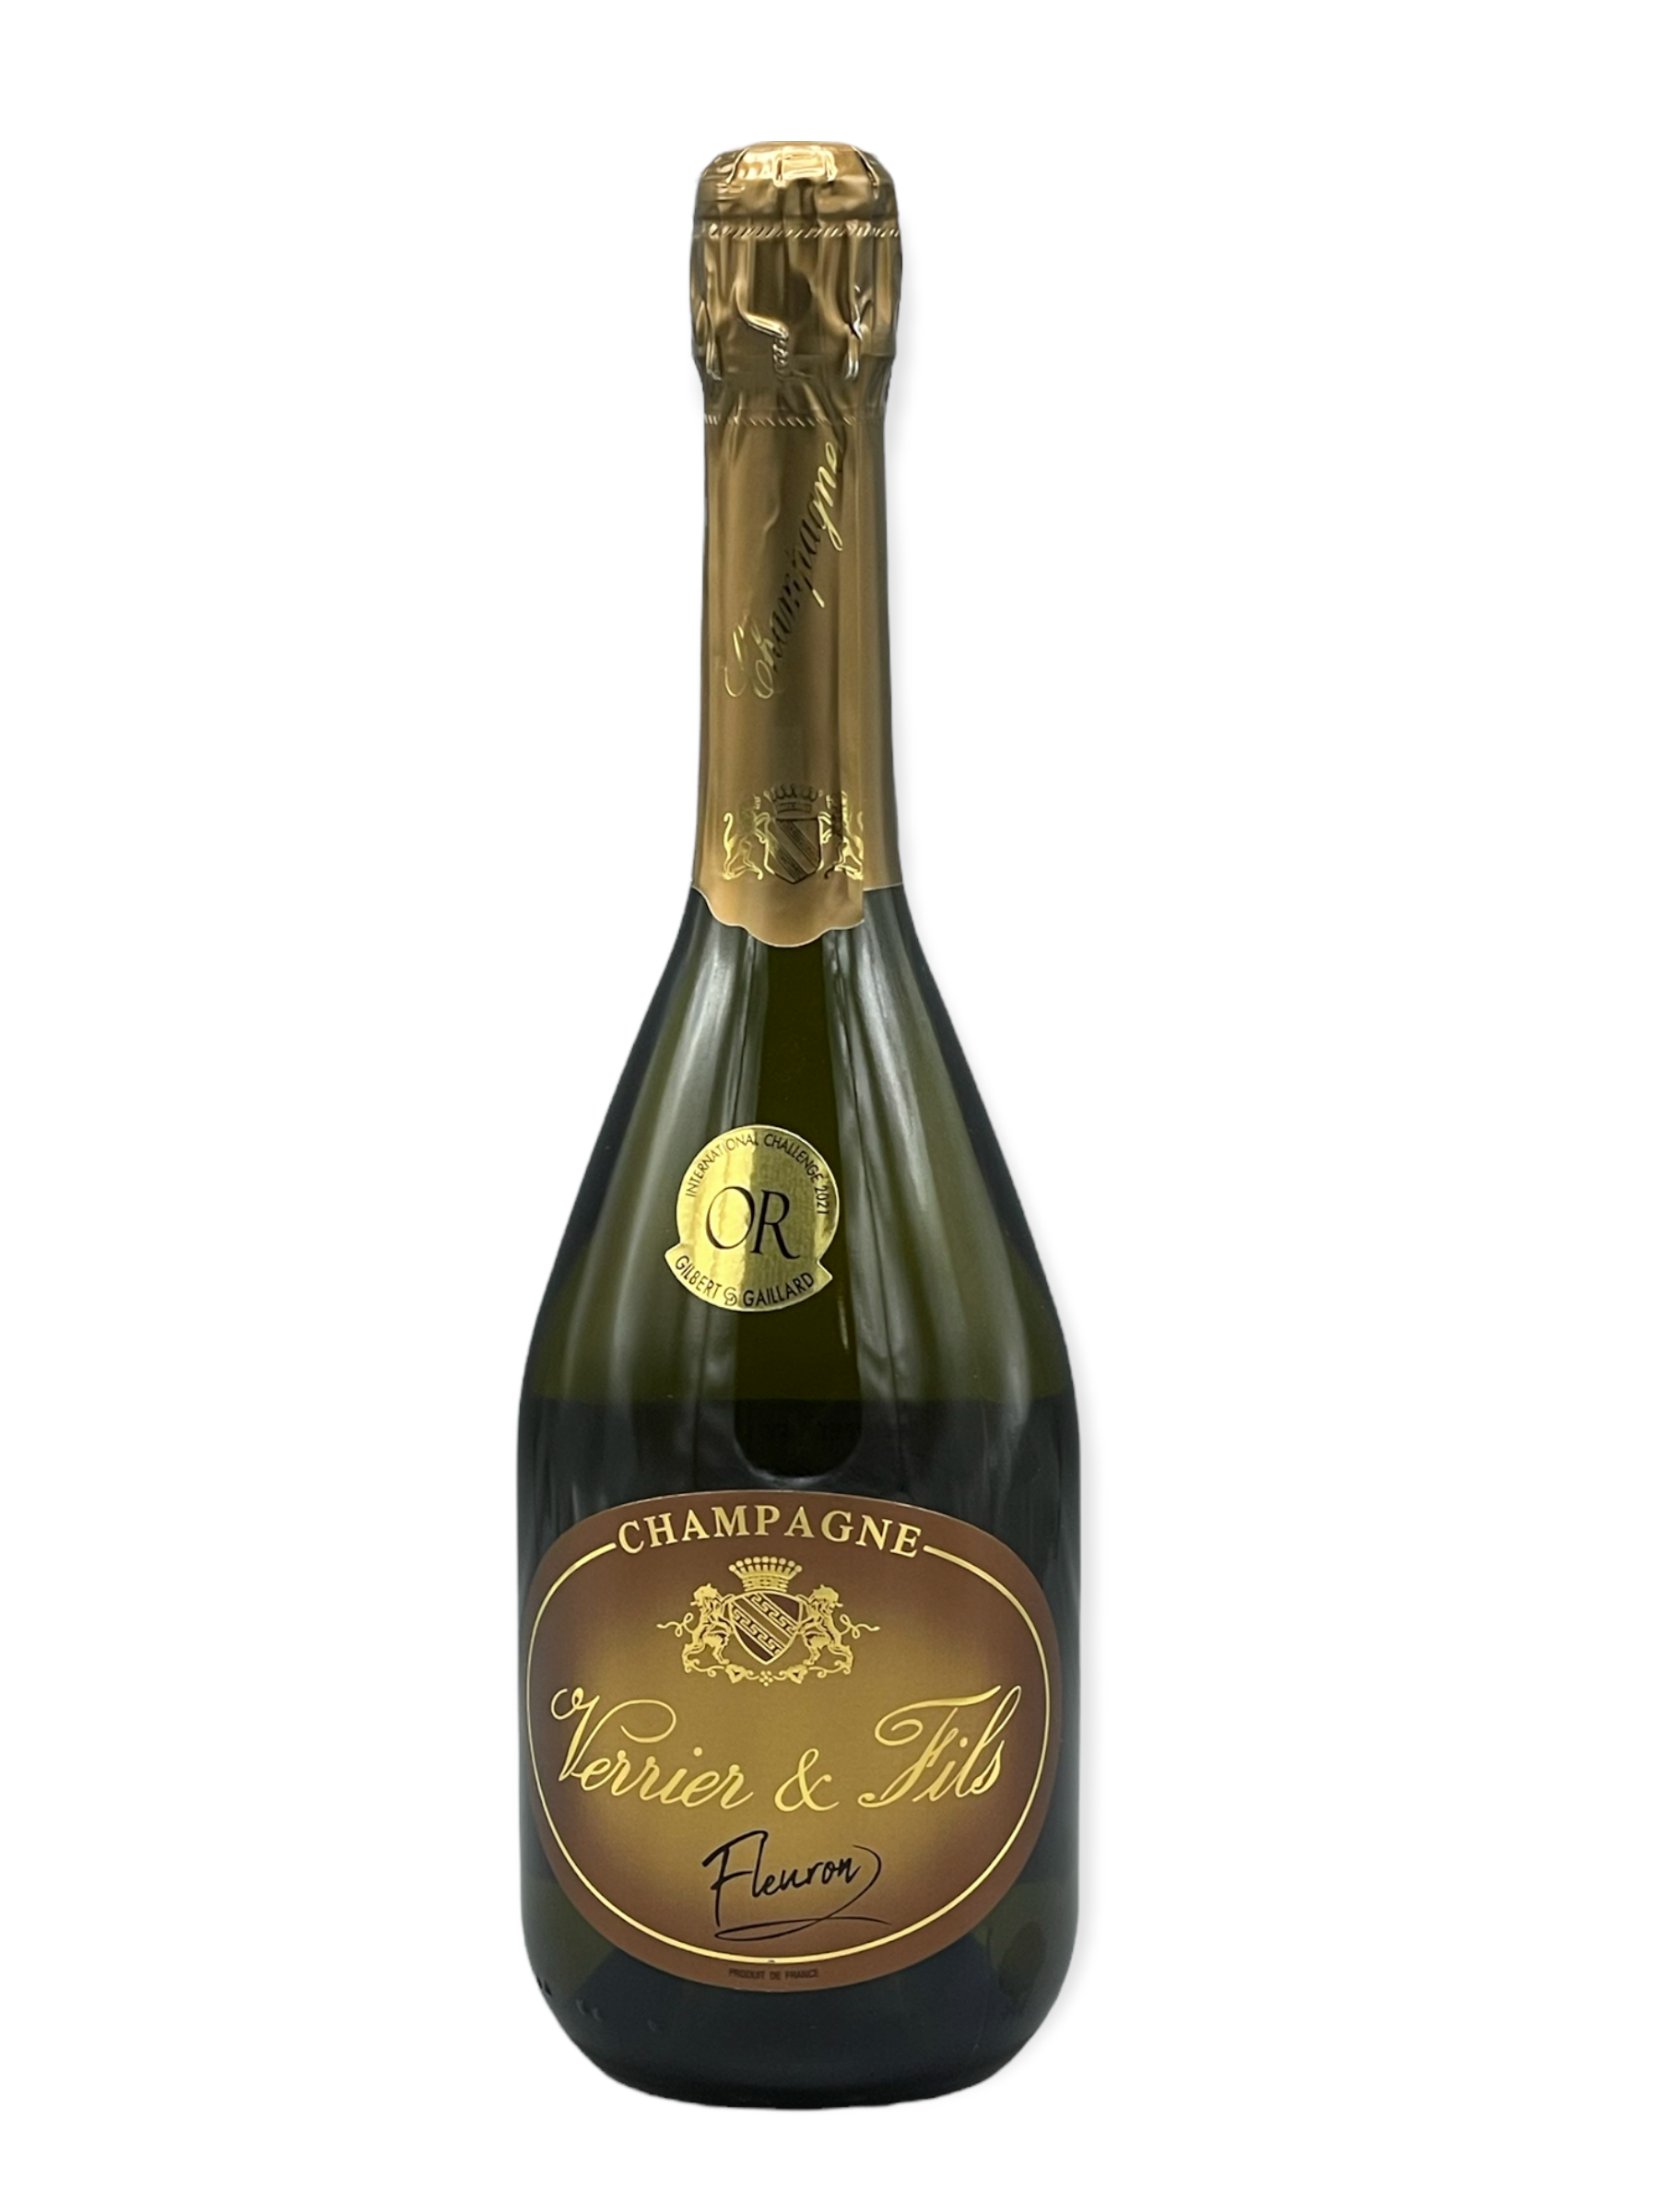 Verrier & Fils - Champagne Cuvee Fleuron Brut NV - VinoNueva Fine & Rare  Wine Miami